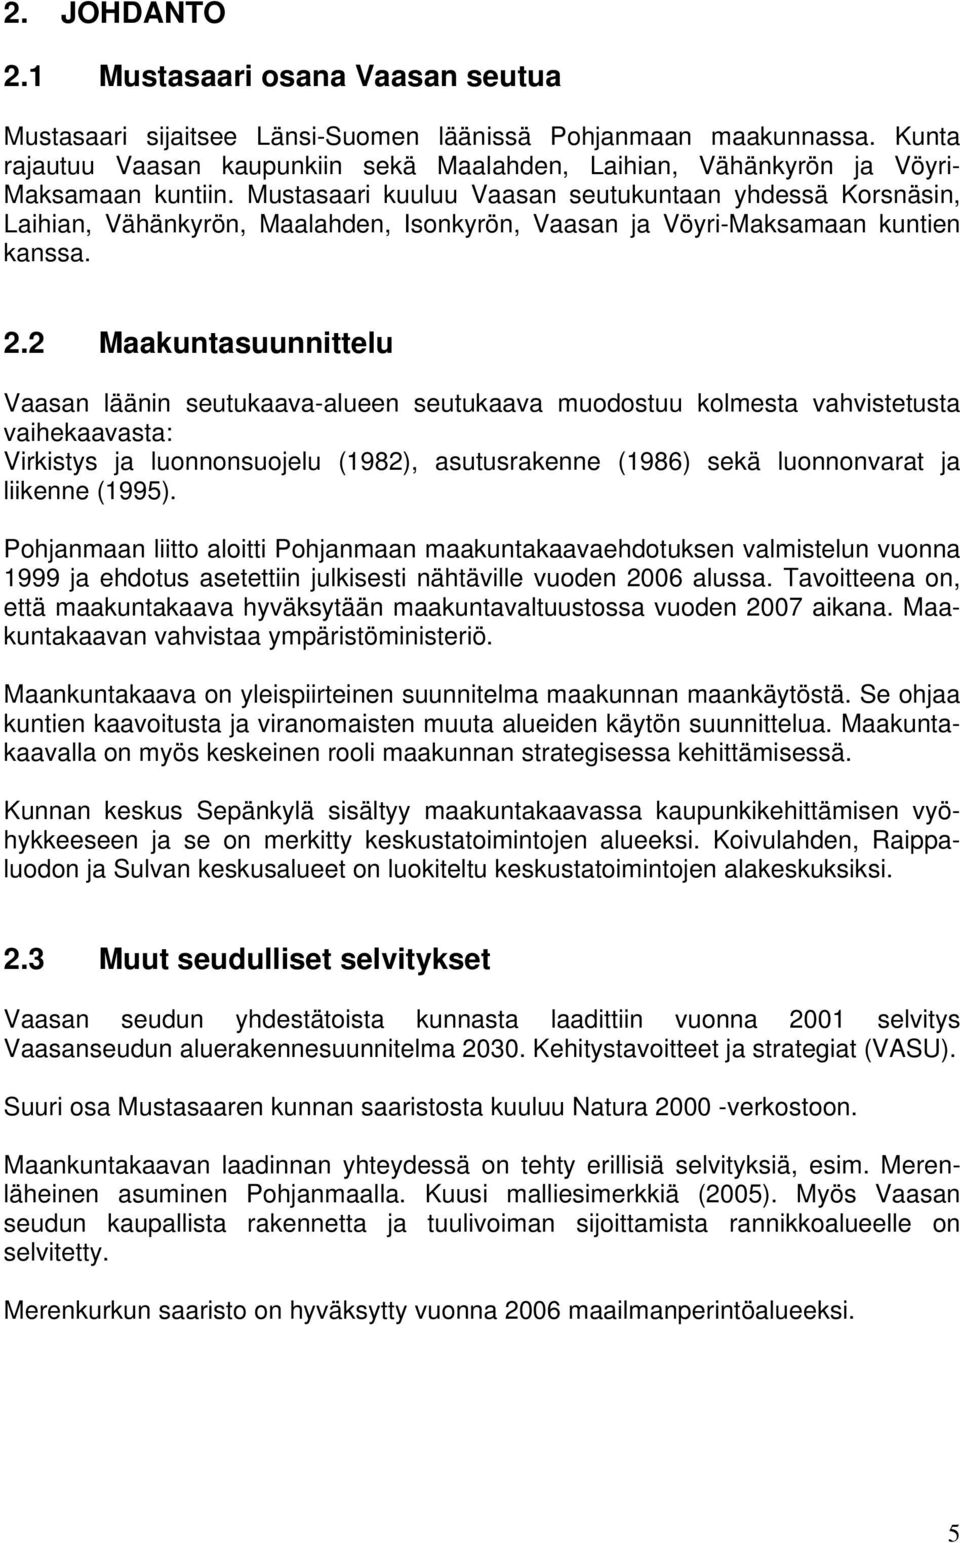 Mustasaari kuuluu Vaasan seutukuntaan yhdessä Korsnäsin, Laihian, Vähänkyrön, Maalahden, Isonkyrön, Vaasan ja Vöyri-Maksamaan kuntien kanssa. 2.